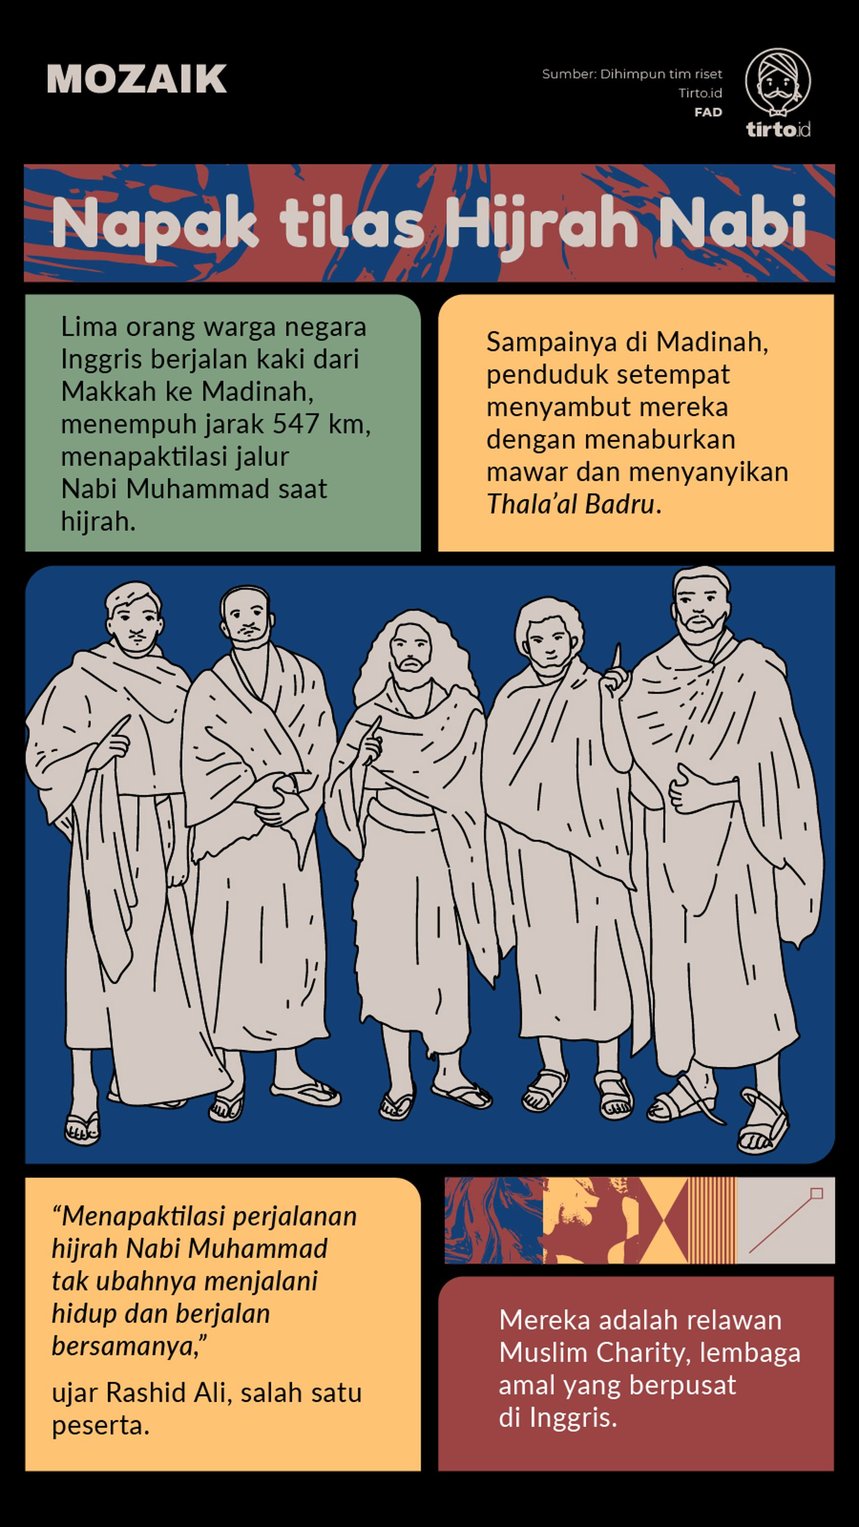 Infografik Mozaik Napak tilas Hijrah Nabi